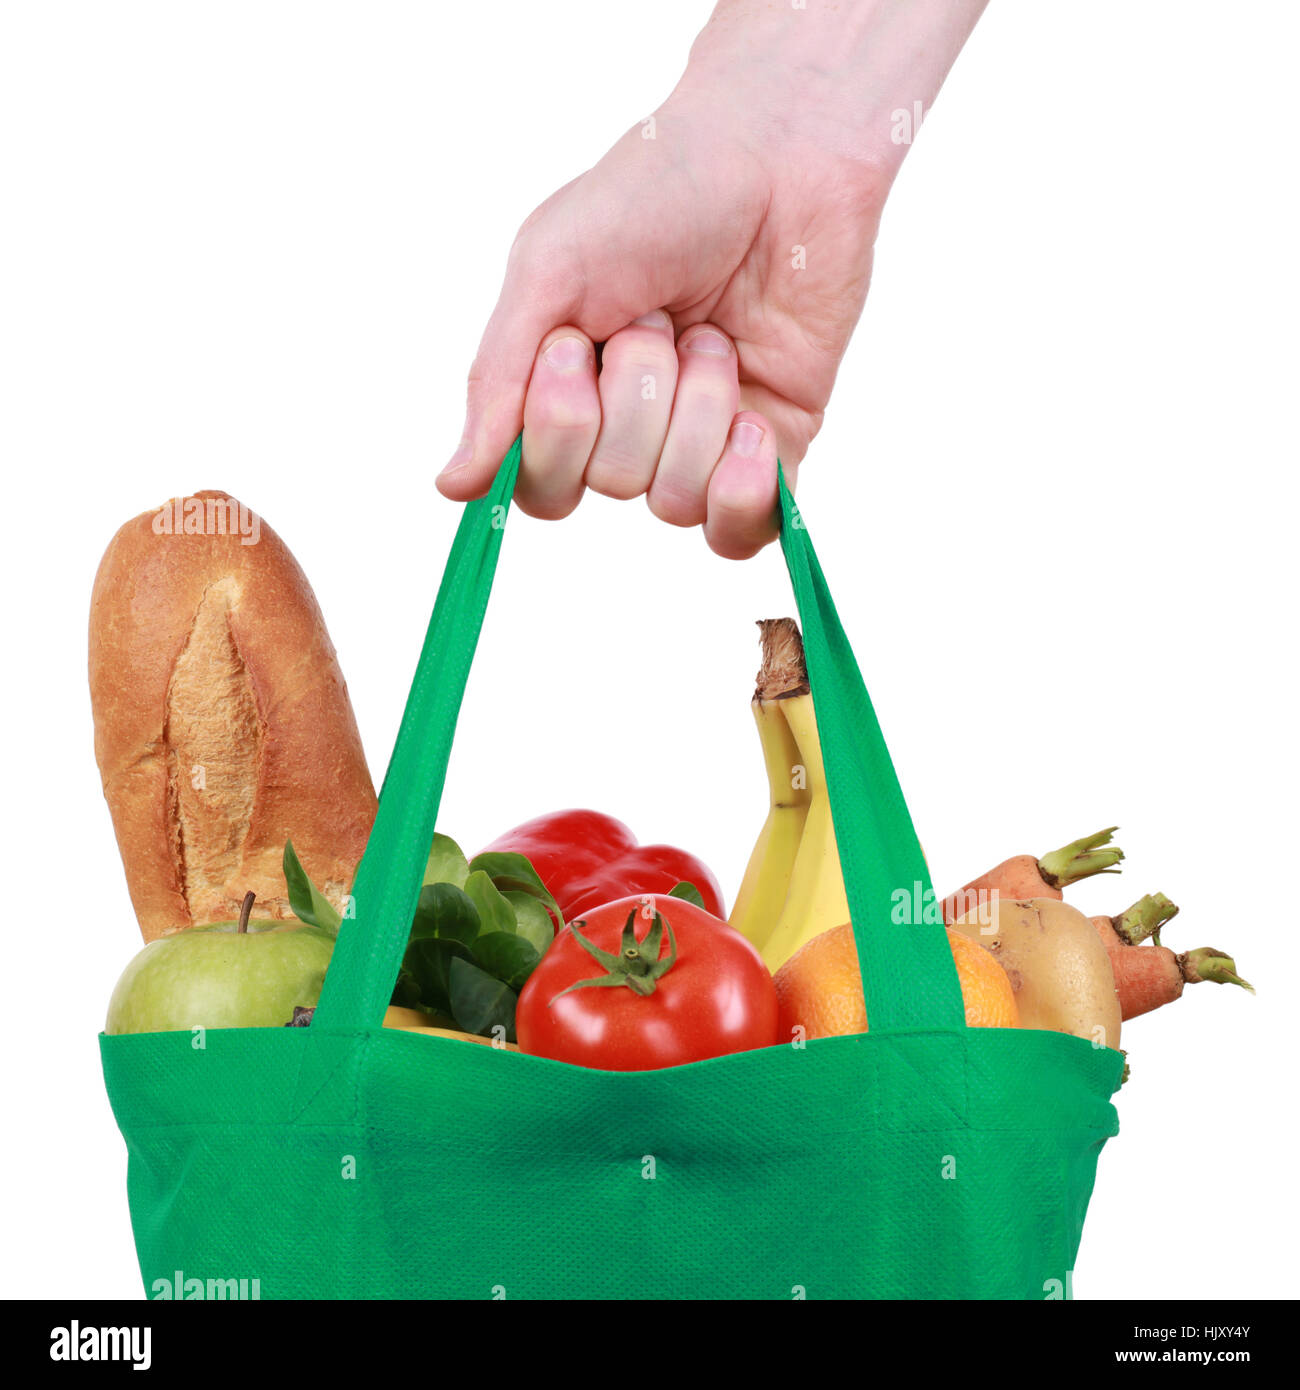 progenies, fruits, fruit, shopping, vegetable, buy, supermarket, purchase, Stock Photo